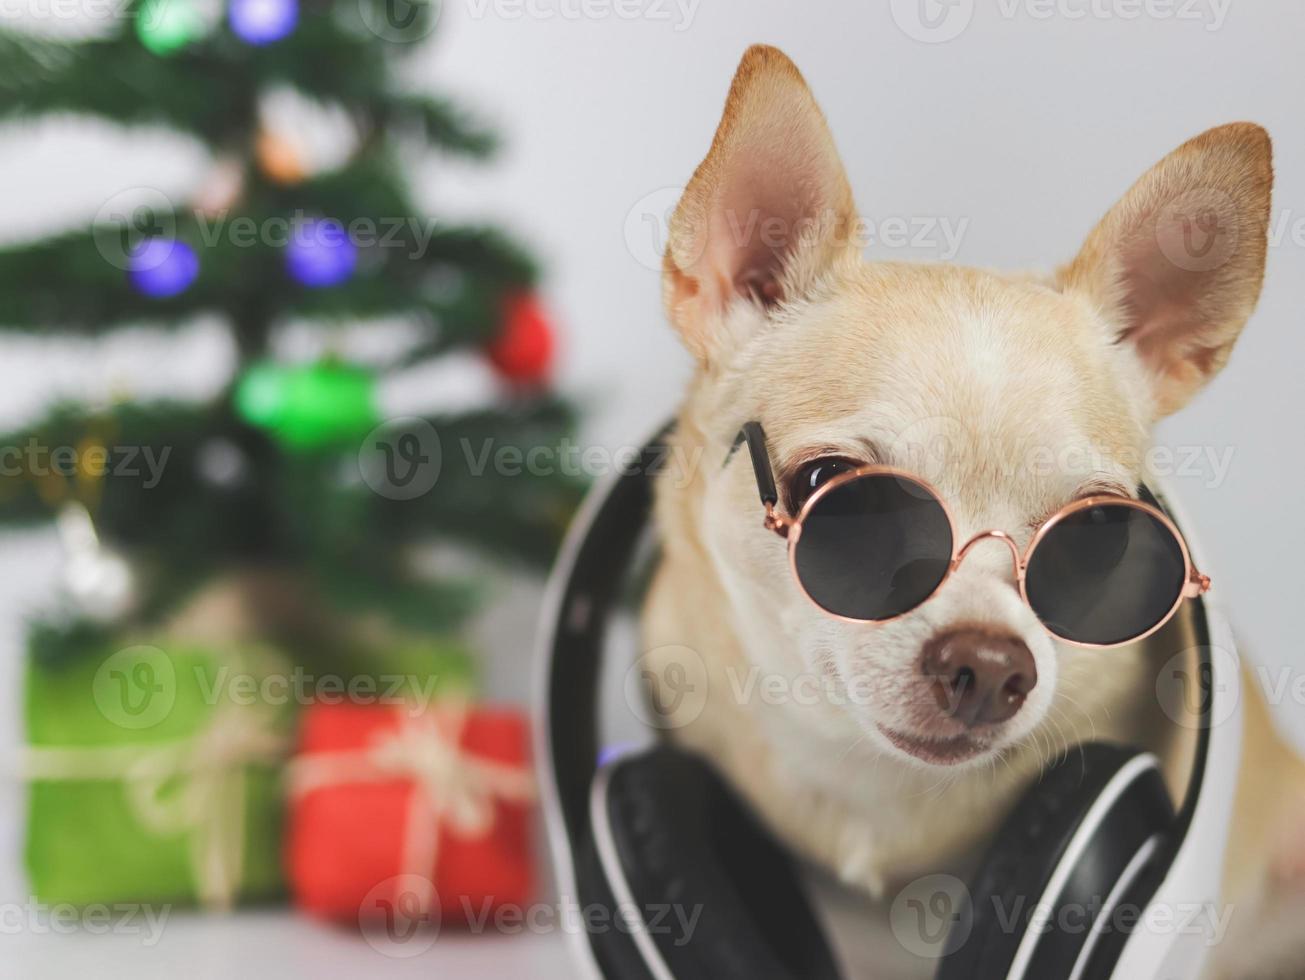 cachorro chihuahua de cabelo curto marrom usando óculos escuros e fones de ouvido em volta do pescoço, sentado no fundo branco com árvore de natal e caixa de presente vermelha e verde. foto